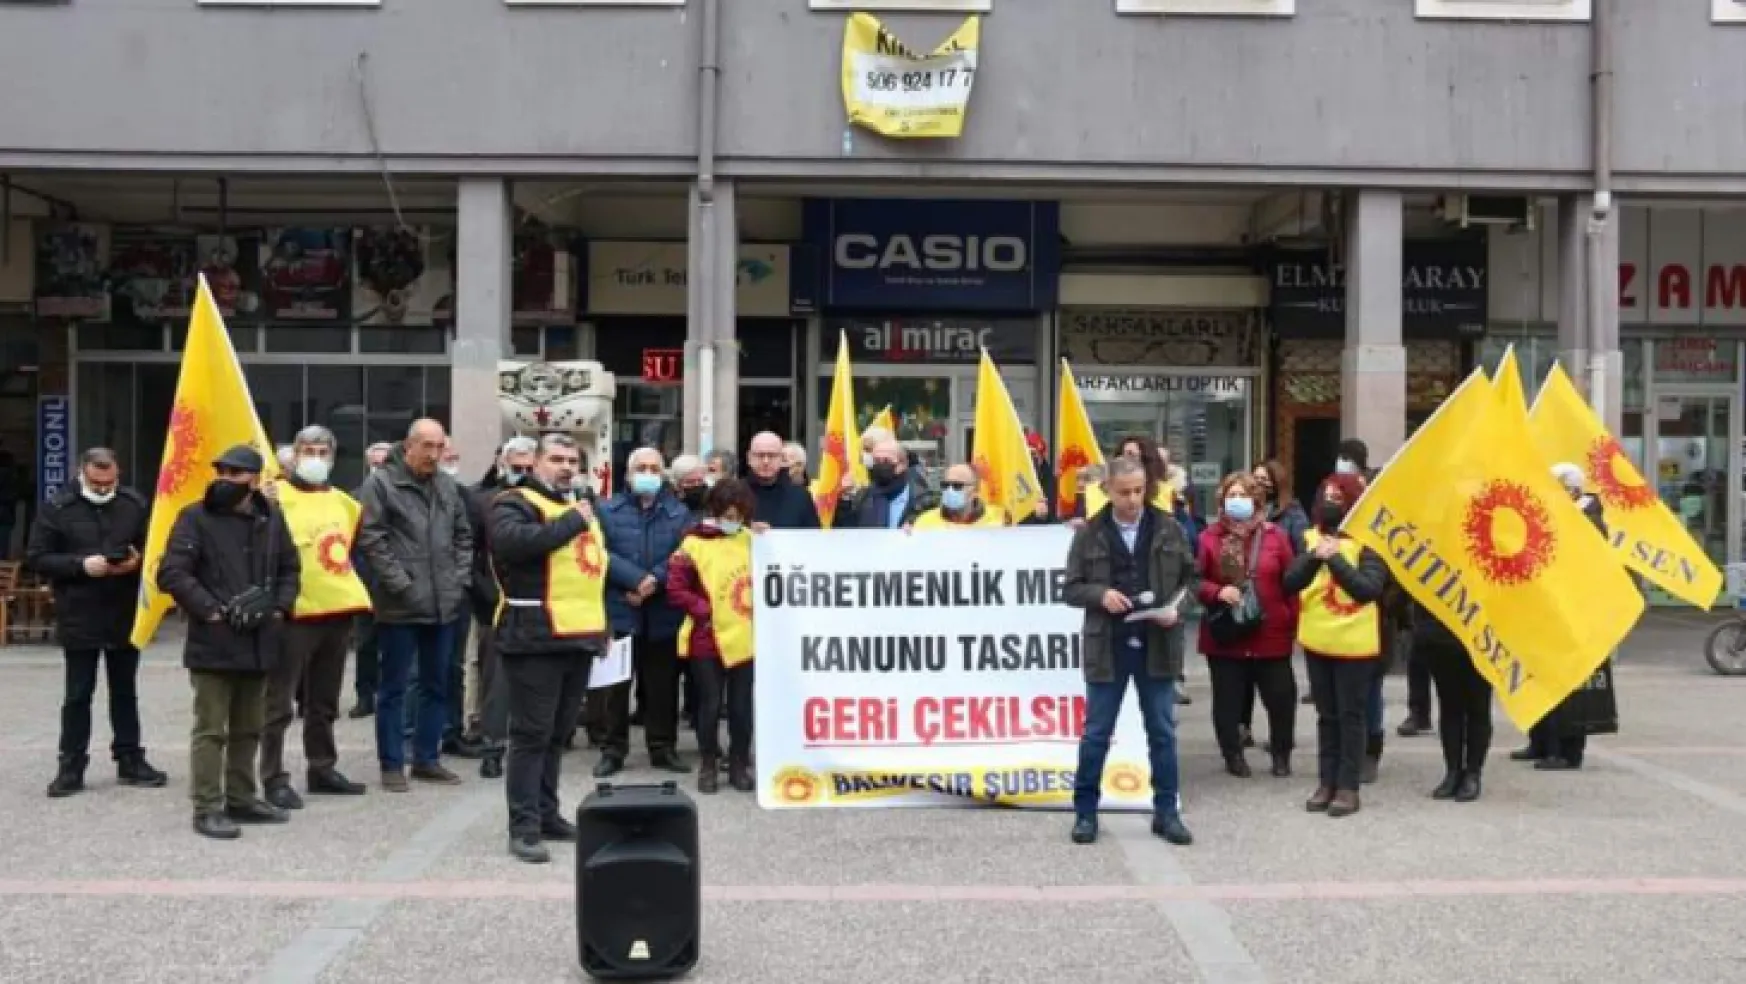 CHP'li Sarı'dan Öğretmenlere Destek Hükümet Öğretmenlerin Taleplerini Dikkate Almalıdır